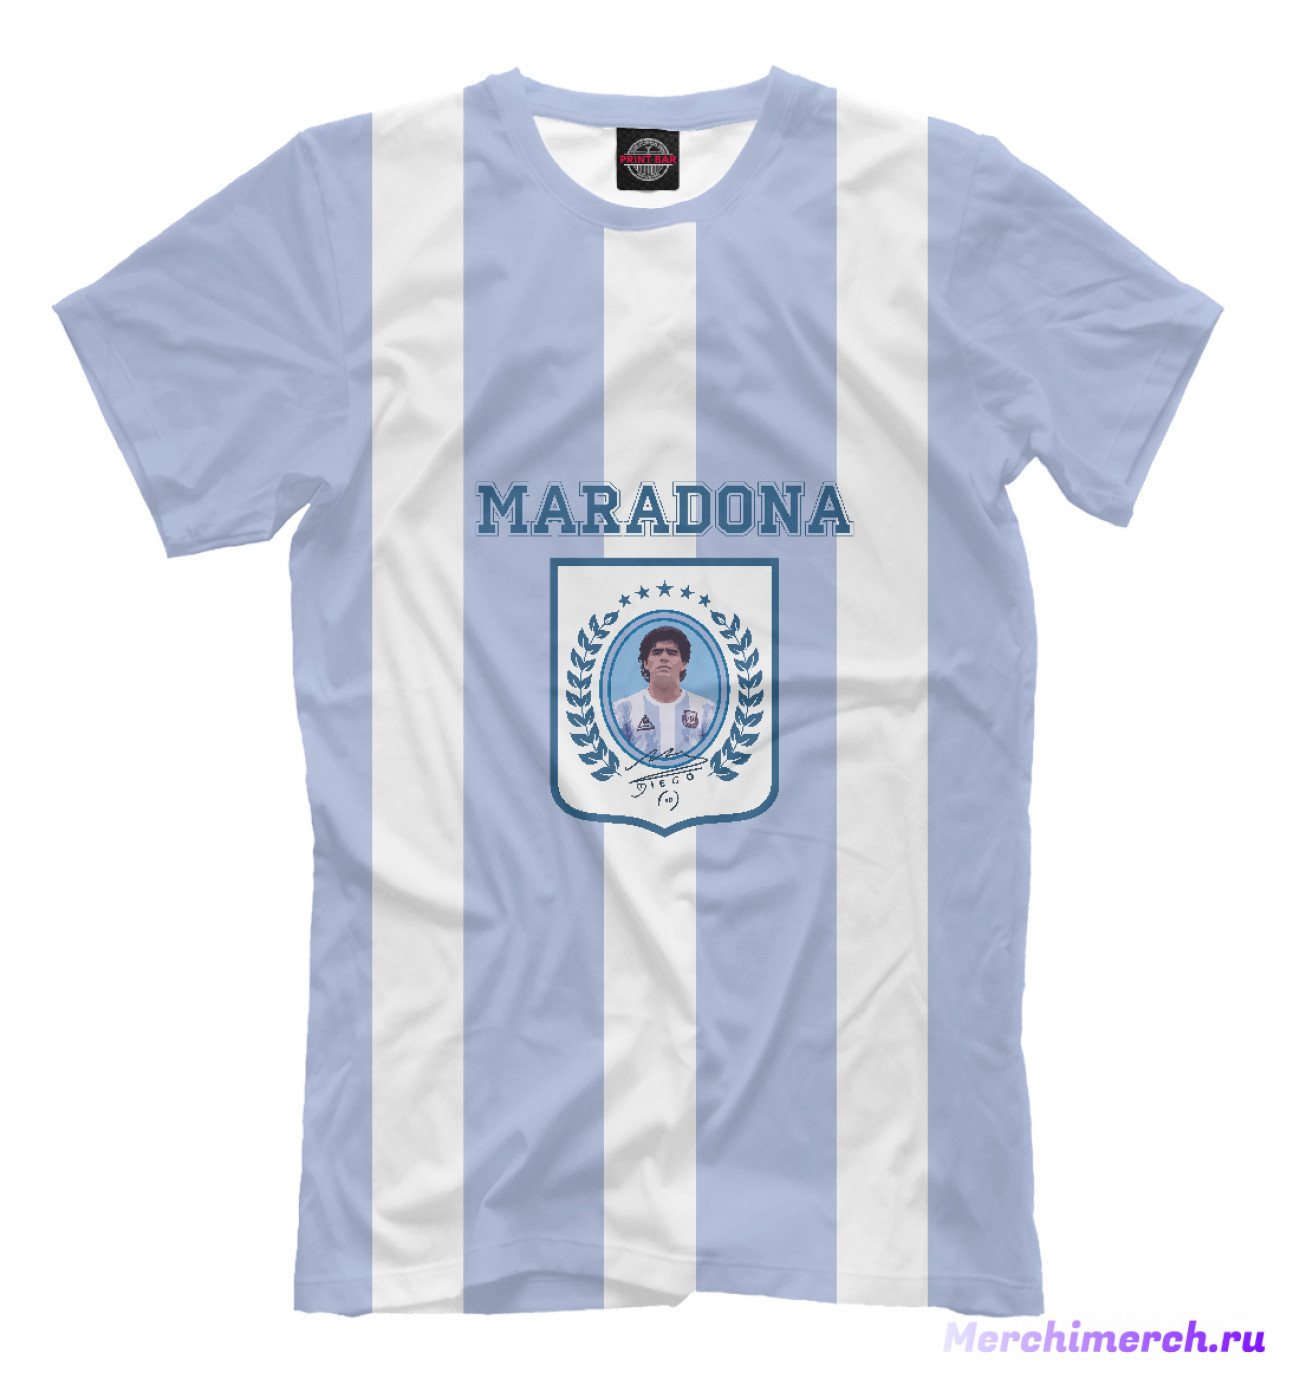 Мужская Футболка Maradona, артикул: FTO-660229-fut-2